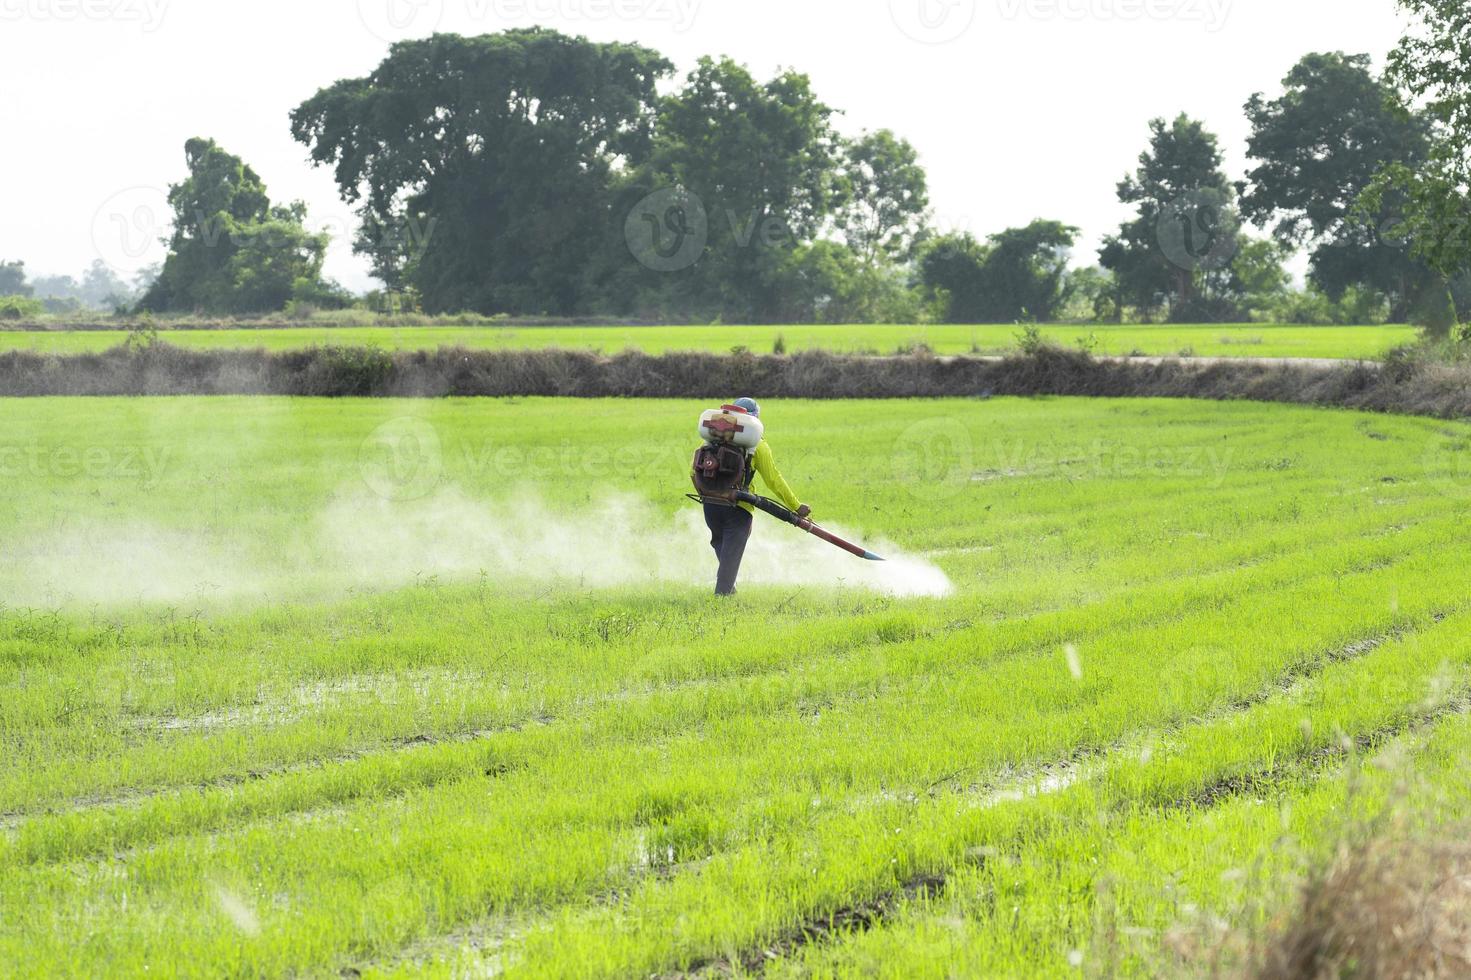 los agricultores rocían herbicidas o pesticidas en los campos de arroz. agricultura y agroindustria, agroindustria. foto